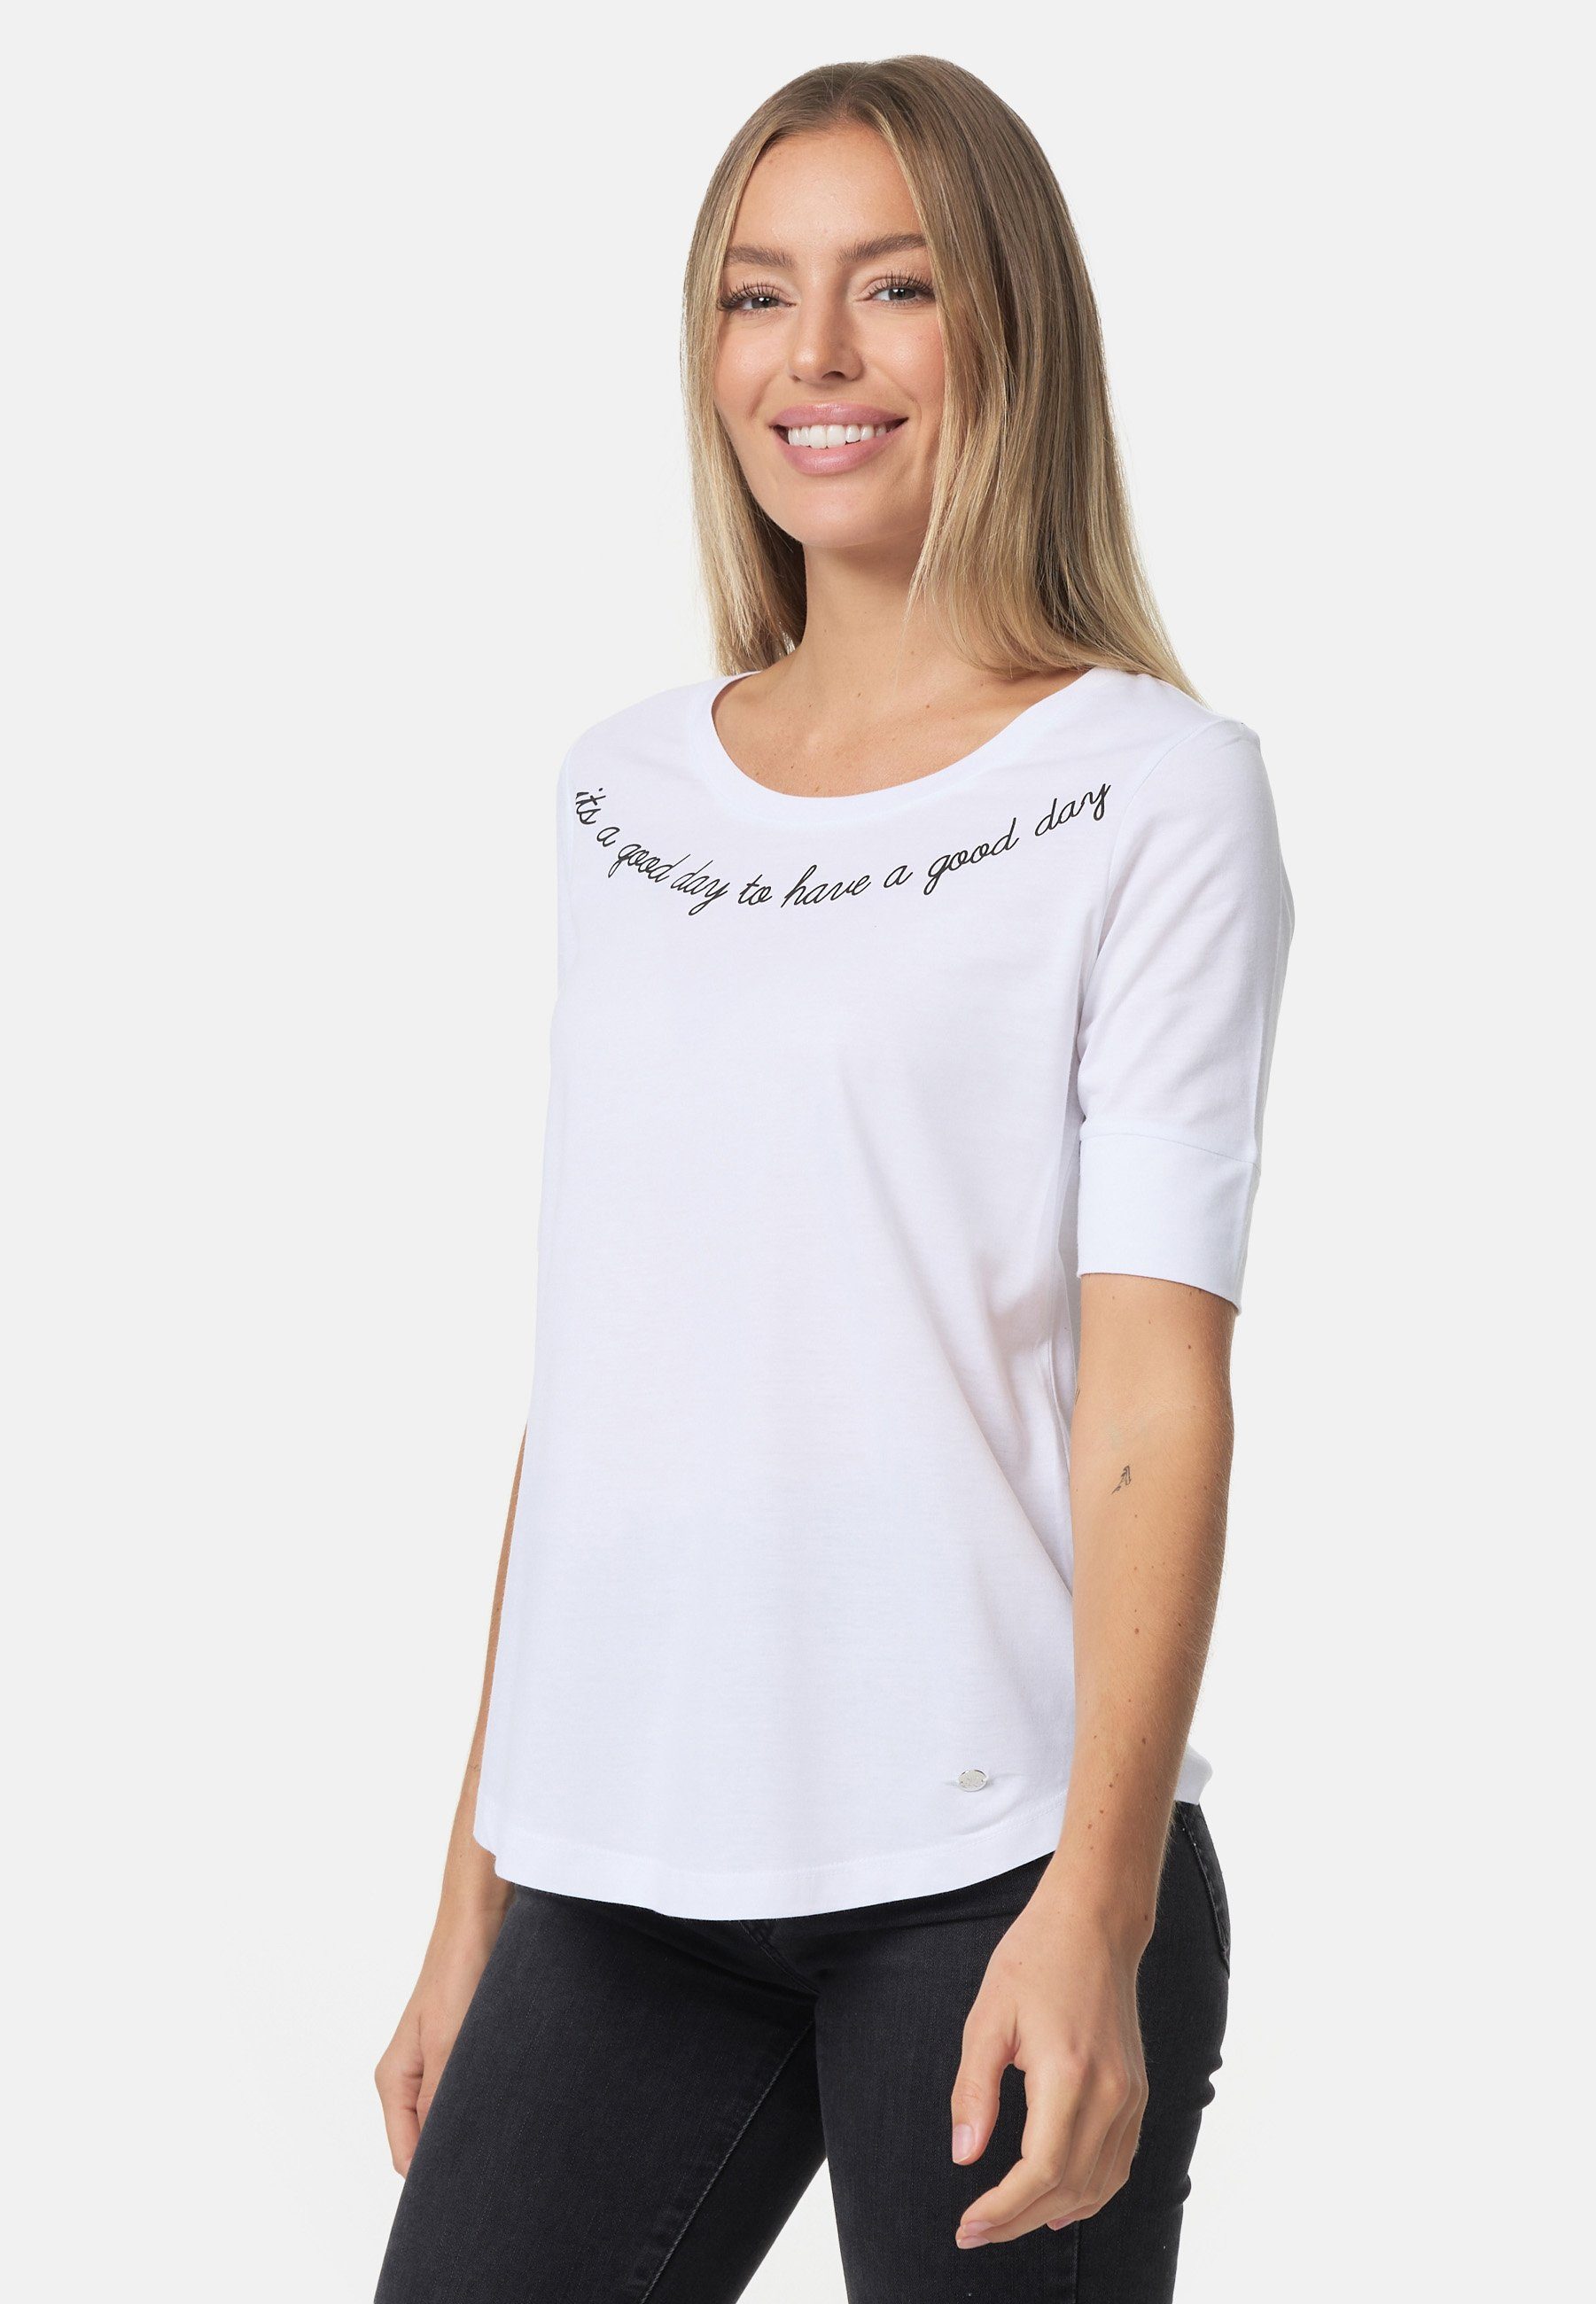 T-Shirt Decay stylischem mit Print weiß-schwarz